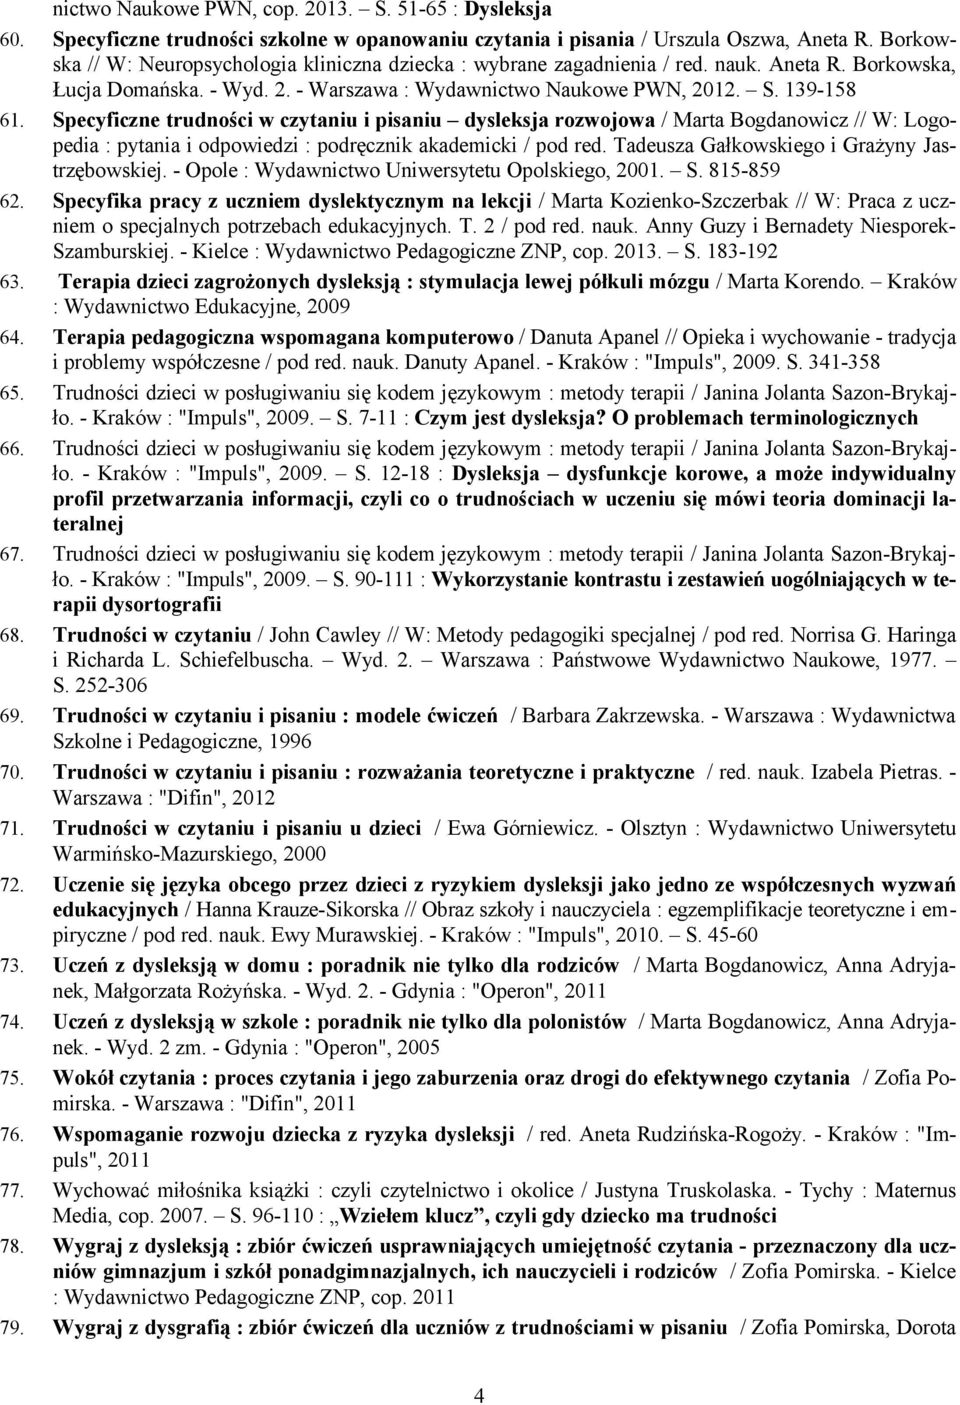 Specyficzne trudności w czytaniu i pisaniu dysleksja rozwojowa / Marta Bogdanowicz // W: Logopedia : pytania i odpowiedzi : podręcznik akademicki / pod red.